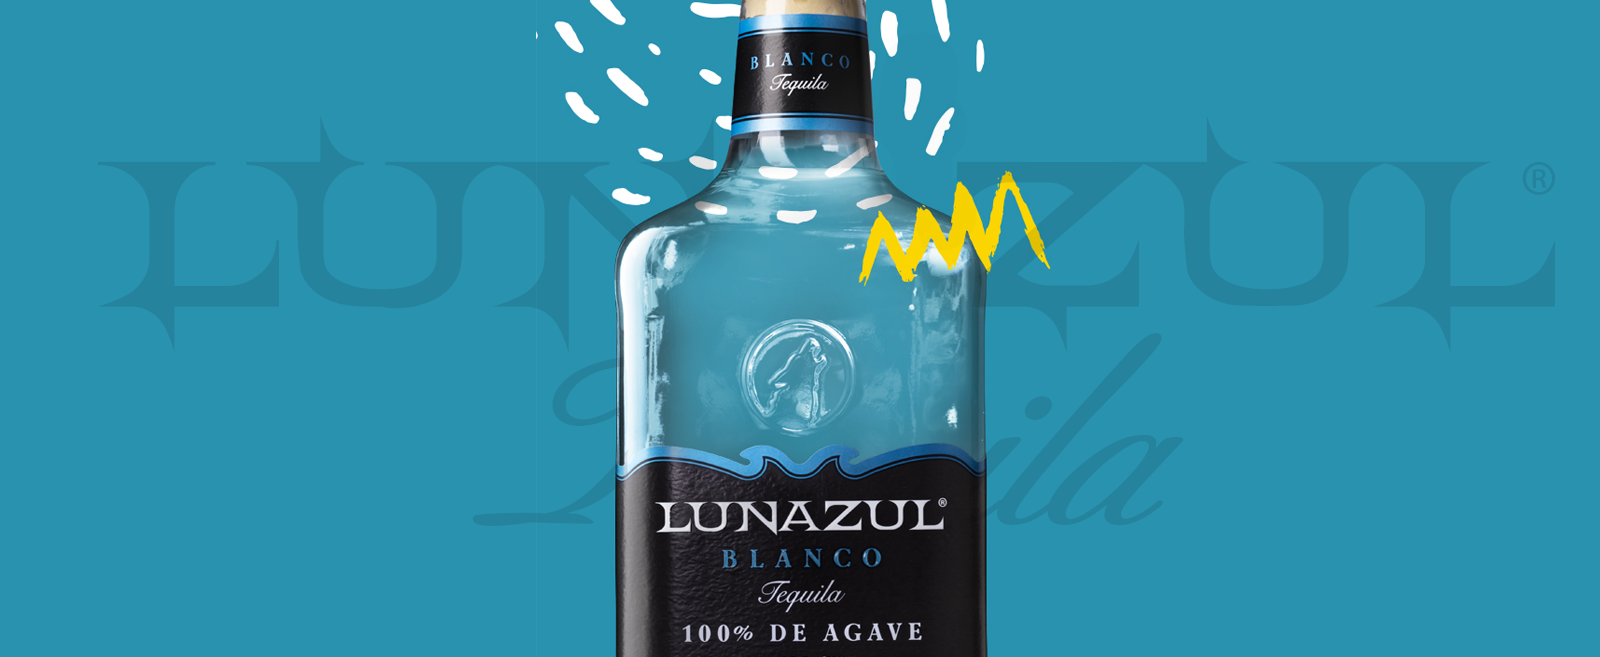 lunazul-tequila-bottle